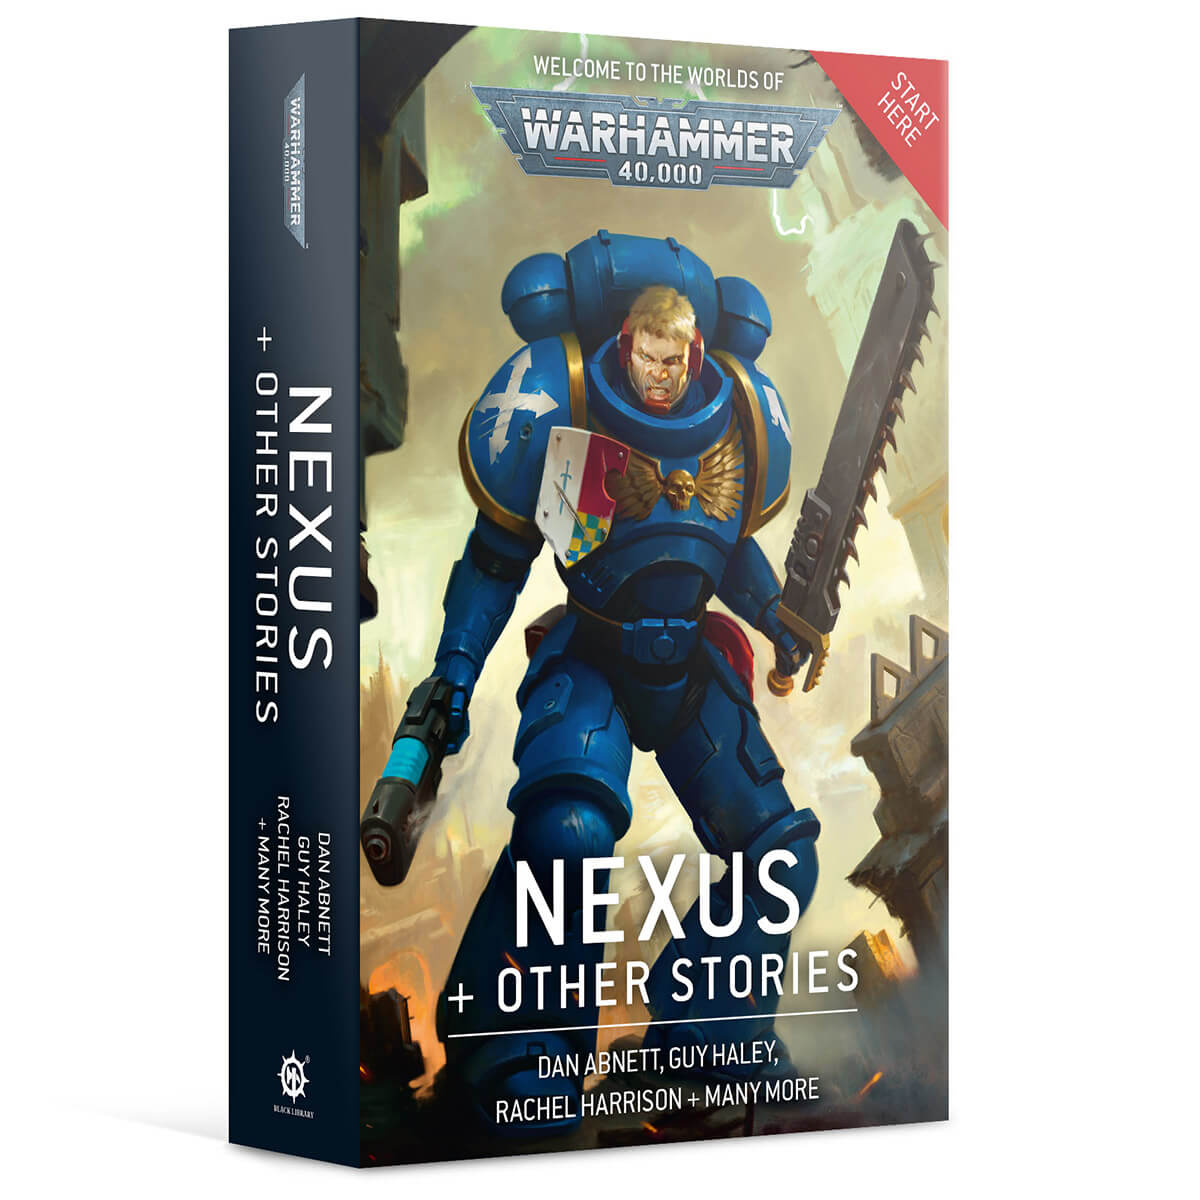 Warhammer 40k Nexus + Other Stories Paperback